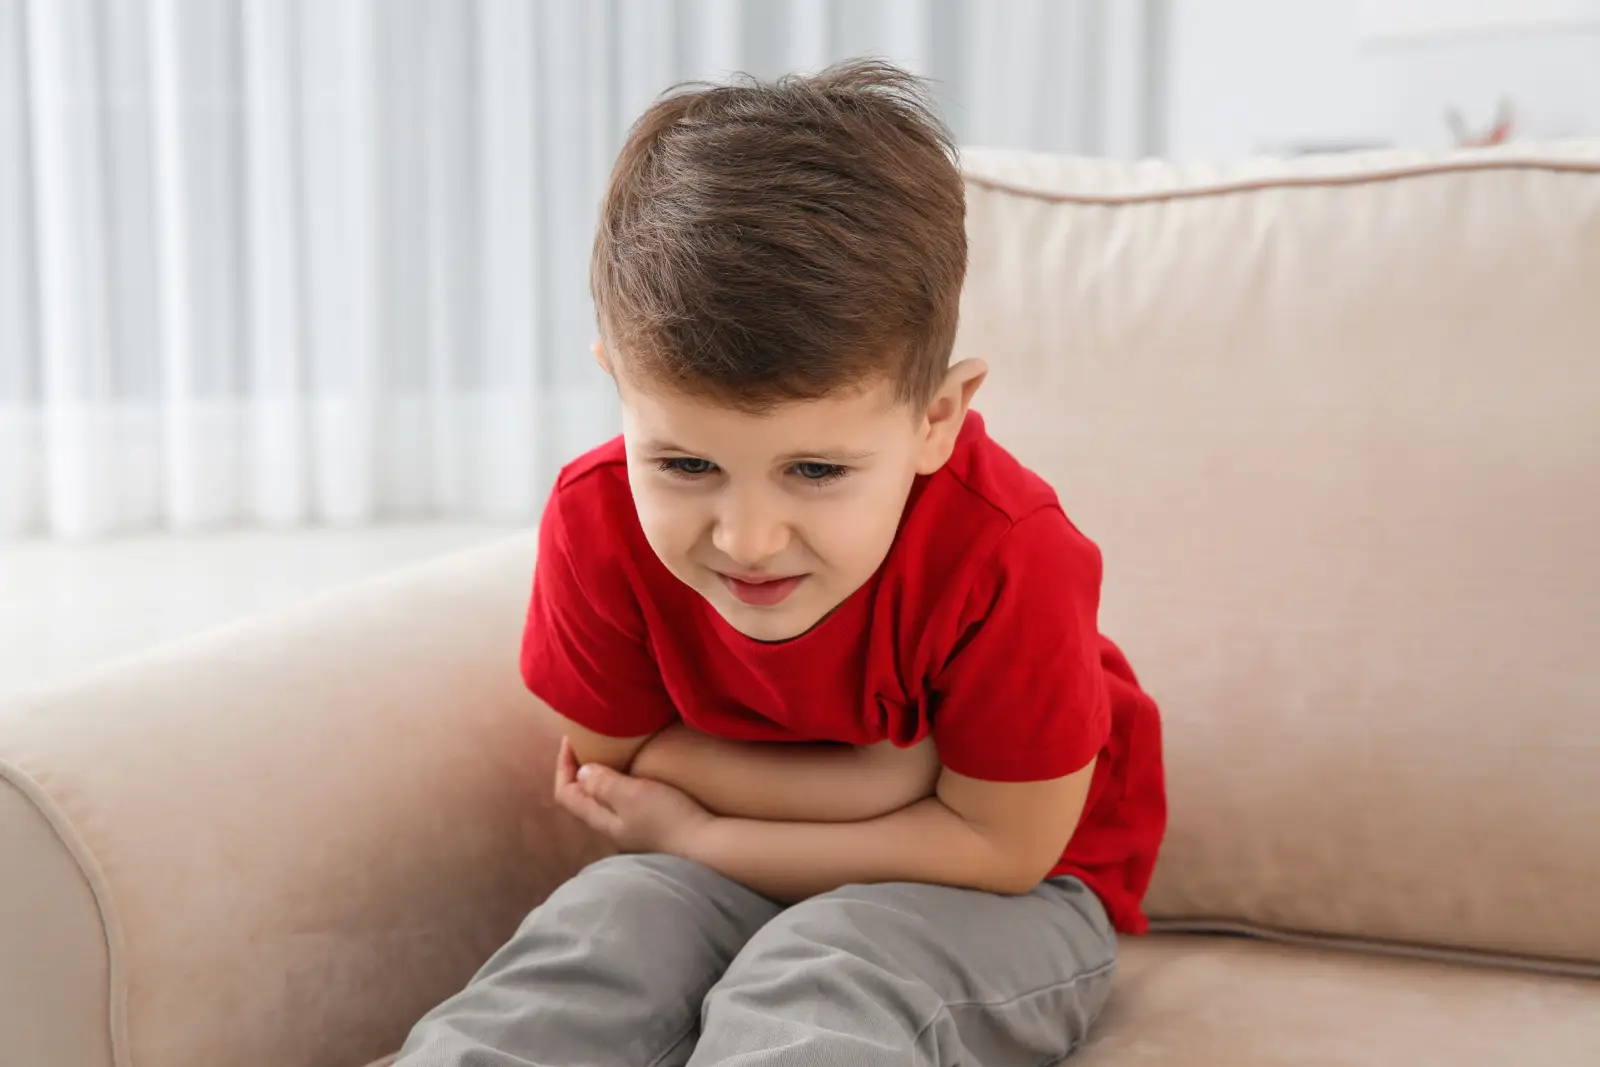 ما هي أعراض القولون العصبي عند الأطفال؟ وكيف يمكن علاجه؟